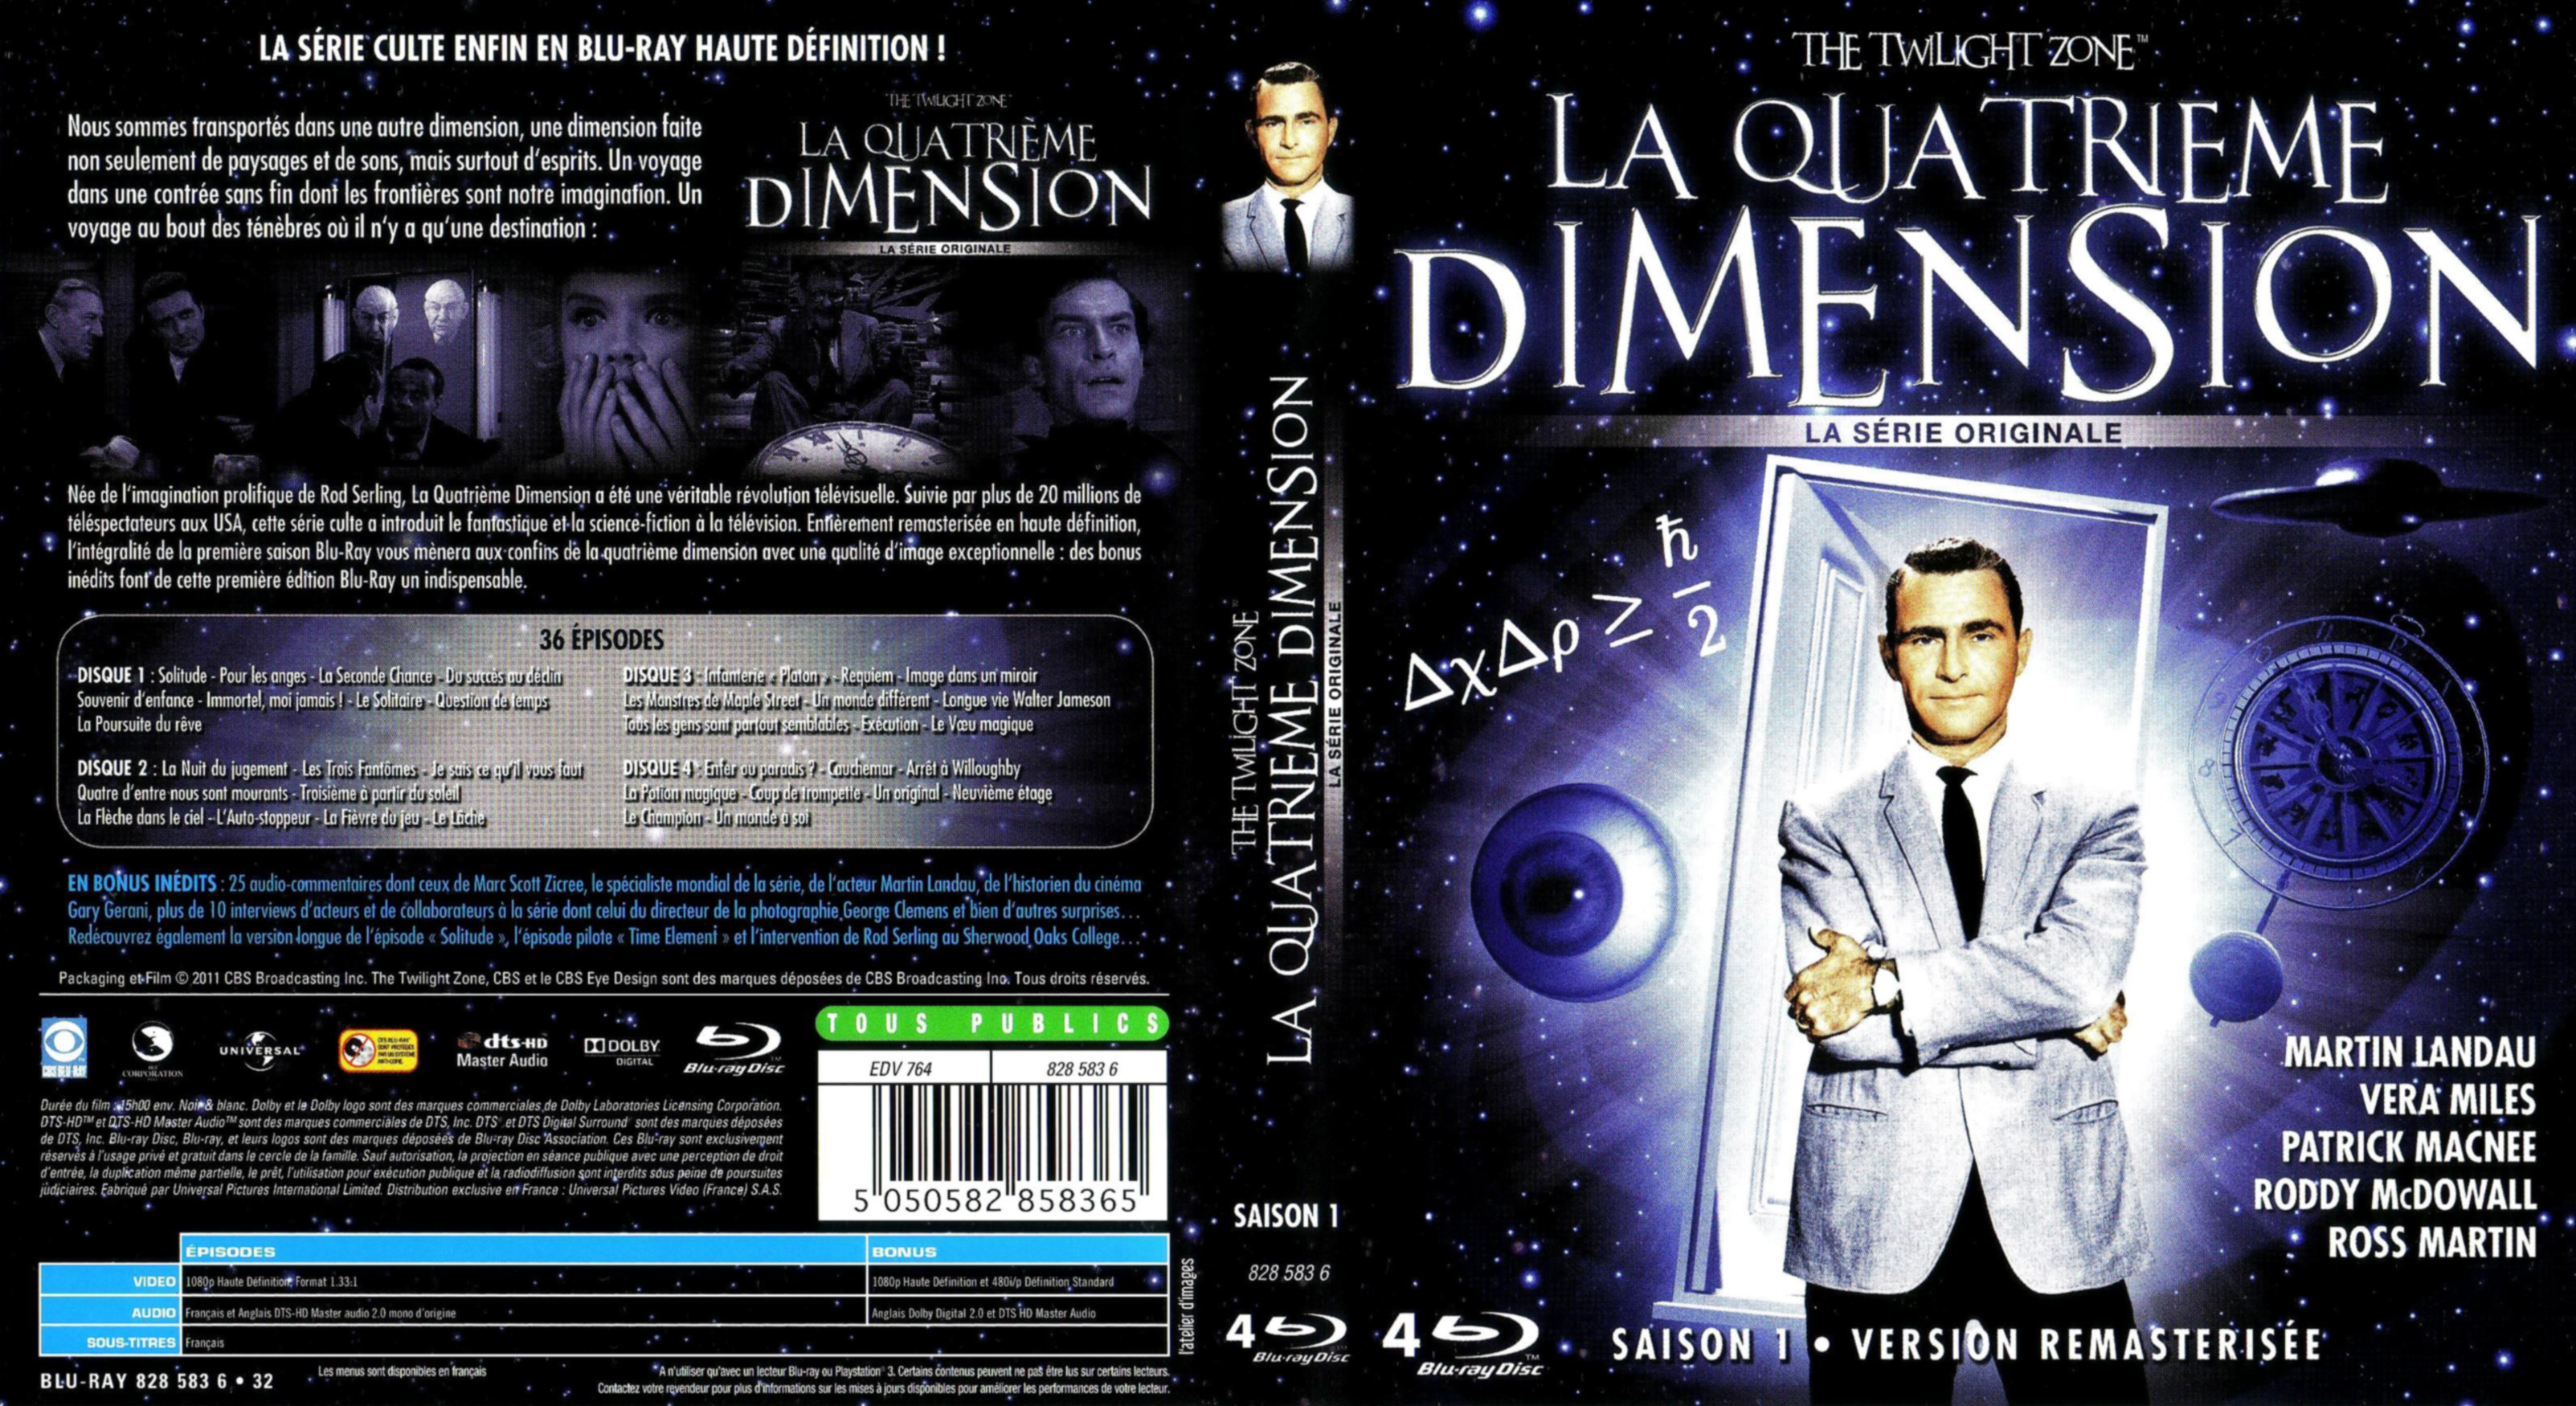 Jaquette DVD La quatrieme dimension saison 1 COFFRET (BLU-RAY)